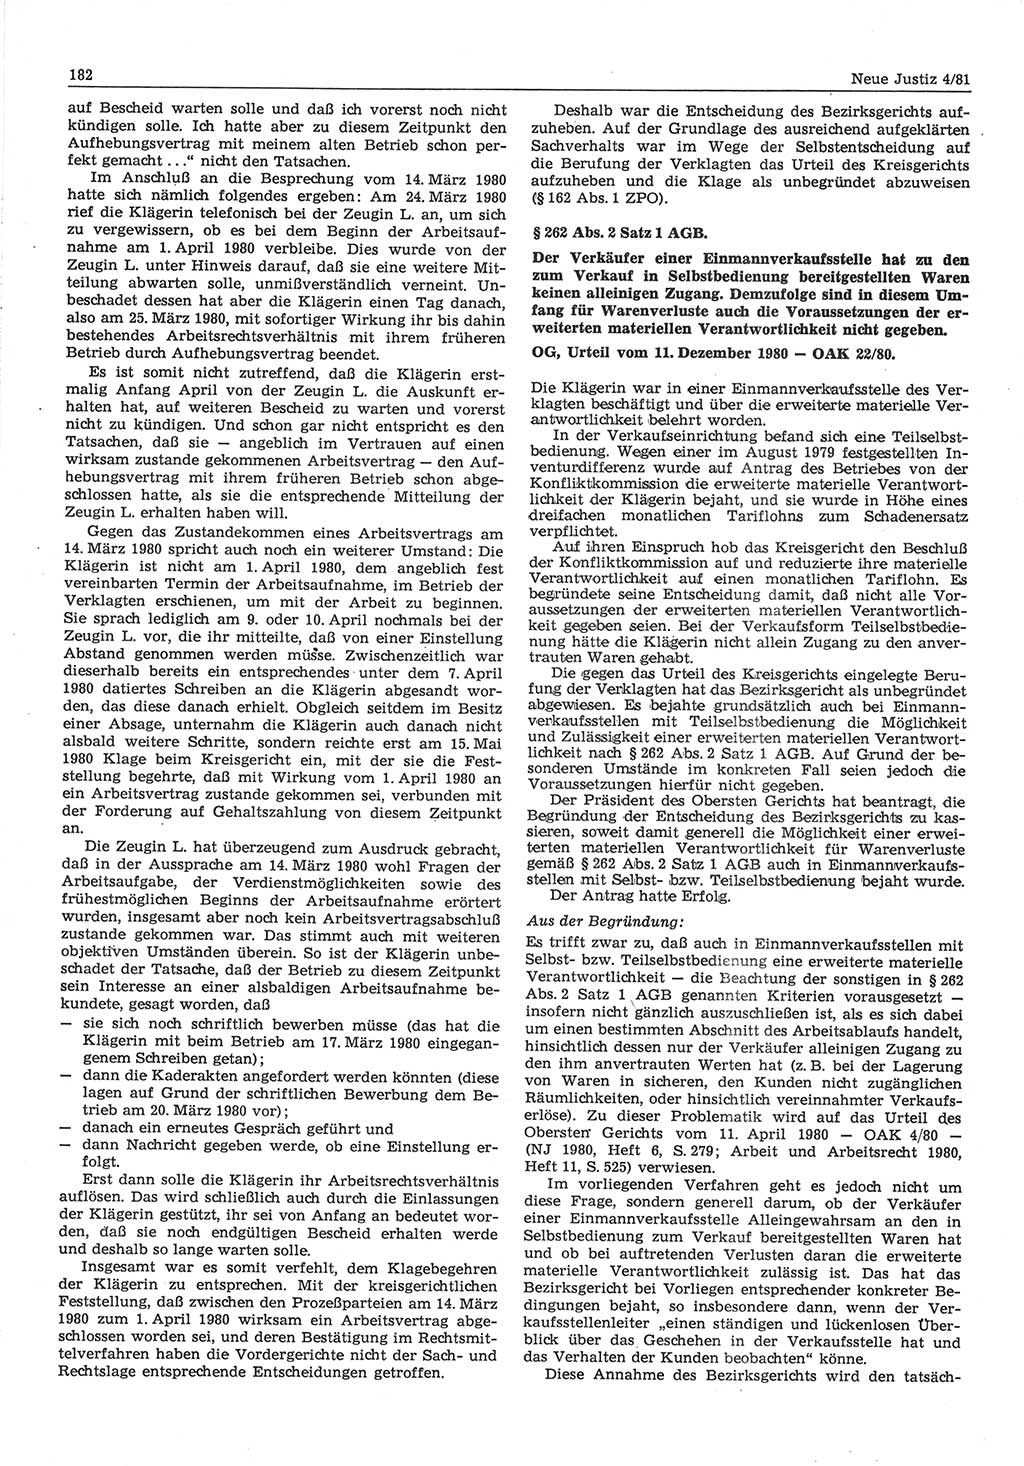 Neue Justiz (NJ), Zeitschrift für sozialistisches Recht und Gesetzlichkeit [Deutsche Demokratische Republik (DDR)], 35. Jahrgang 1981, Seite 182 (NJ DDR 1981, S. 182)